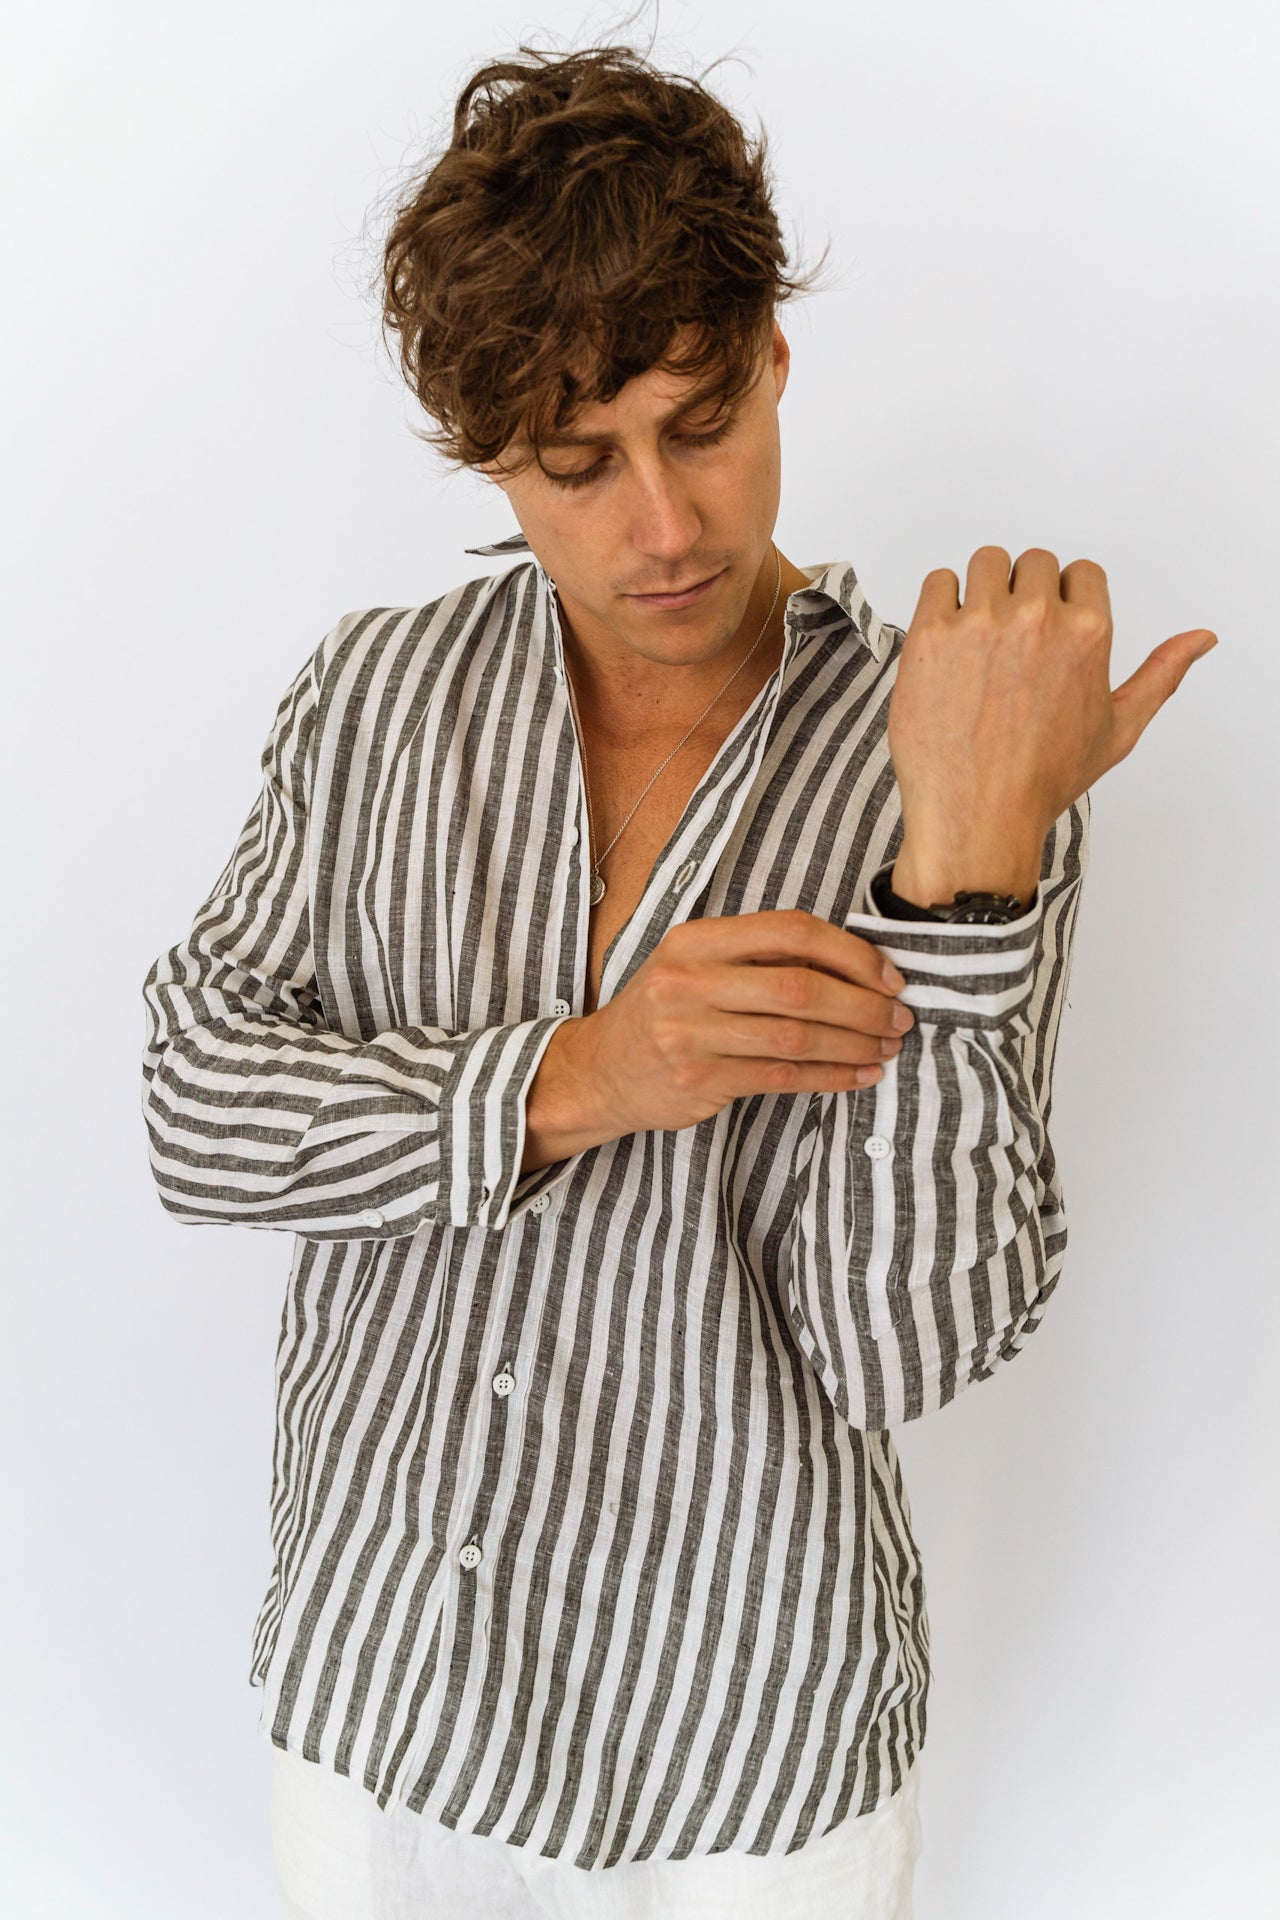 Scorzone Stripes - Long Sleeve Italian Linen Shirt - Mr. Linen Co Mr. Linen CO